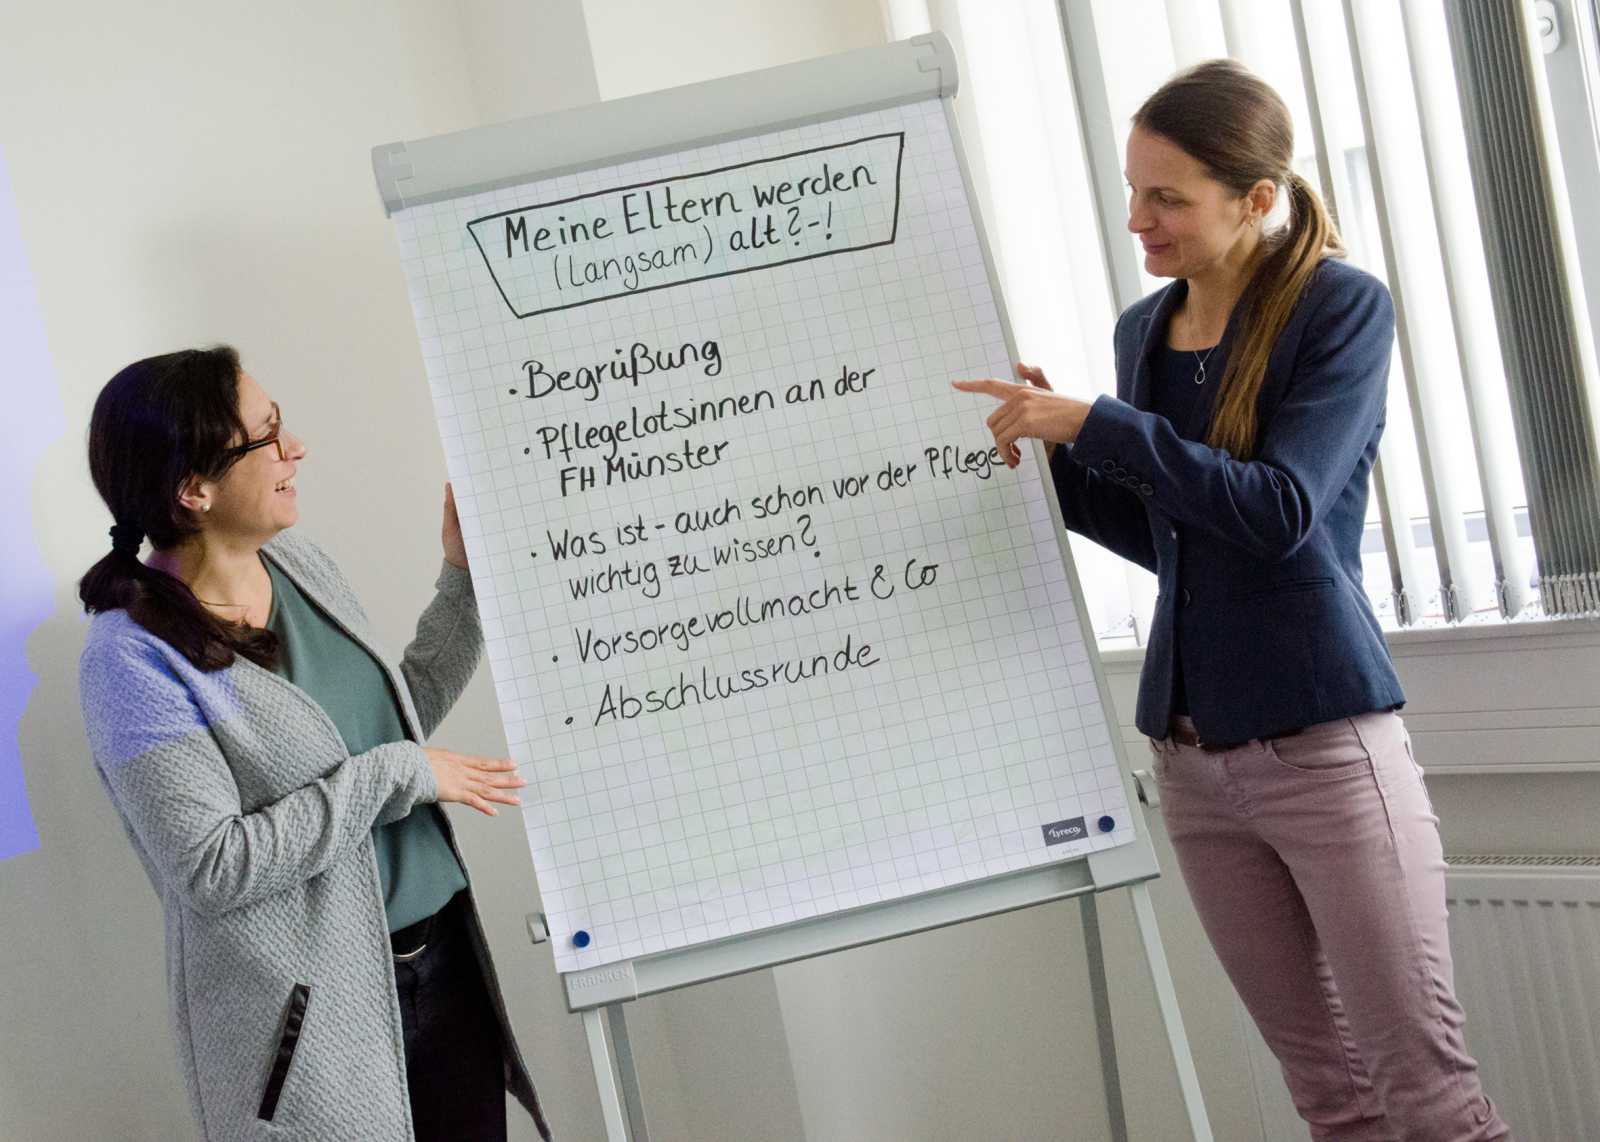 Iklime Düx vom FH-Familienservice (l.) und Dr. Cona Ehresmann vom Betrieblichen Gesundheitsmanagement stellten das Workshop-Programm vor. (Foto: FH Münster/Pressestelle)